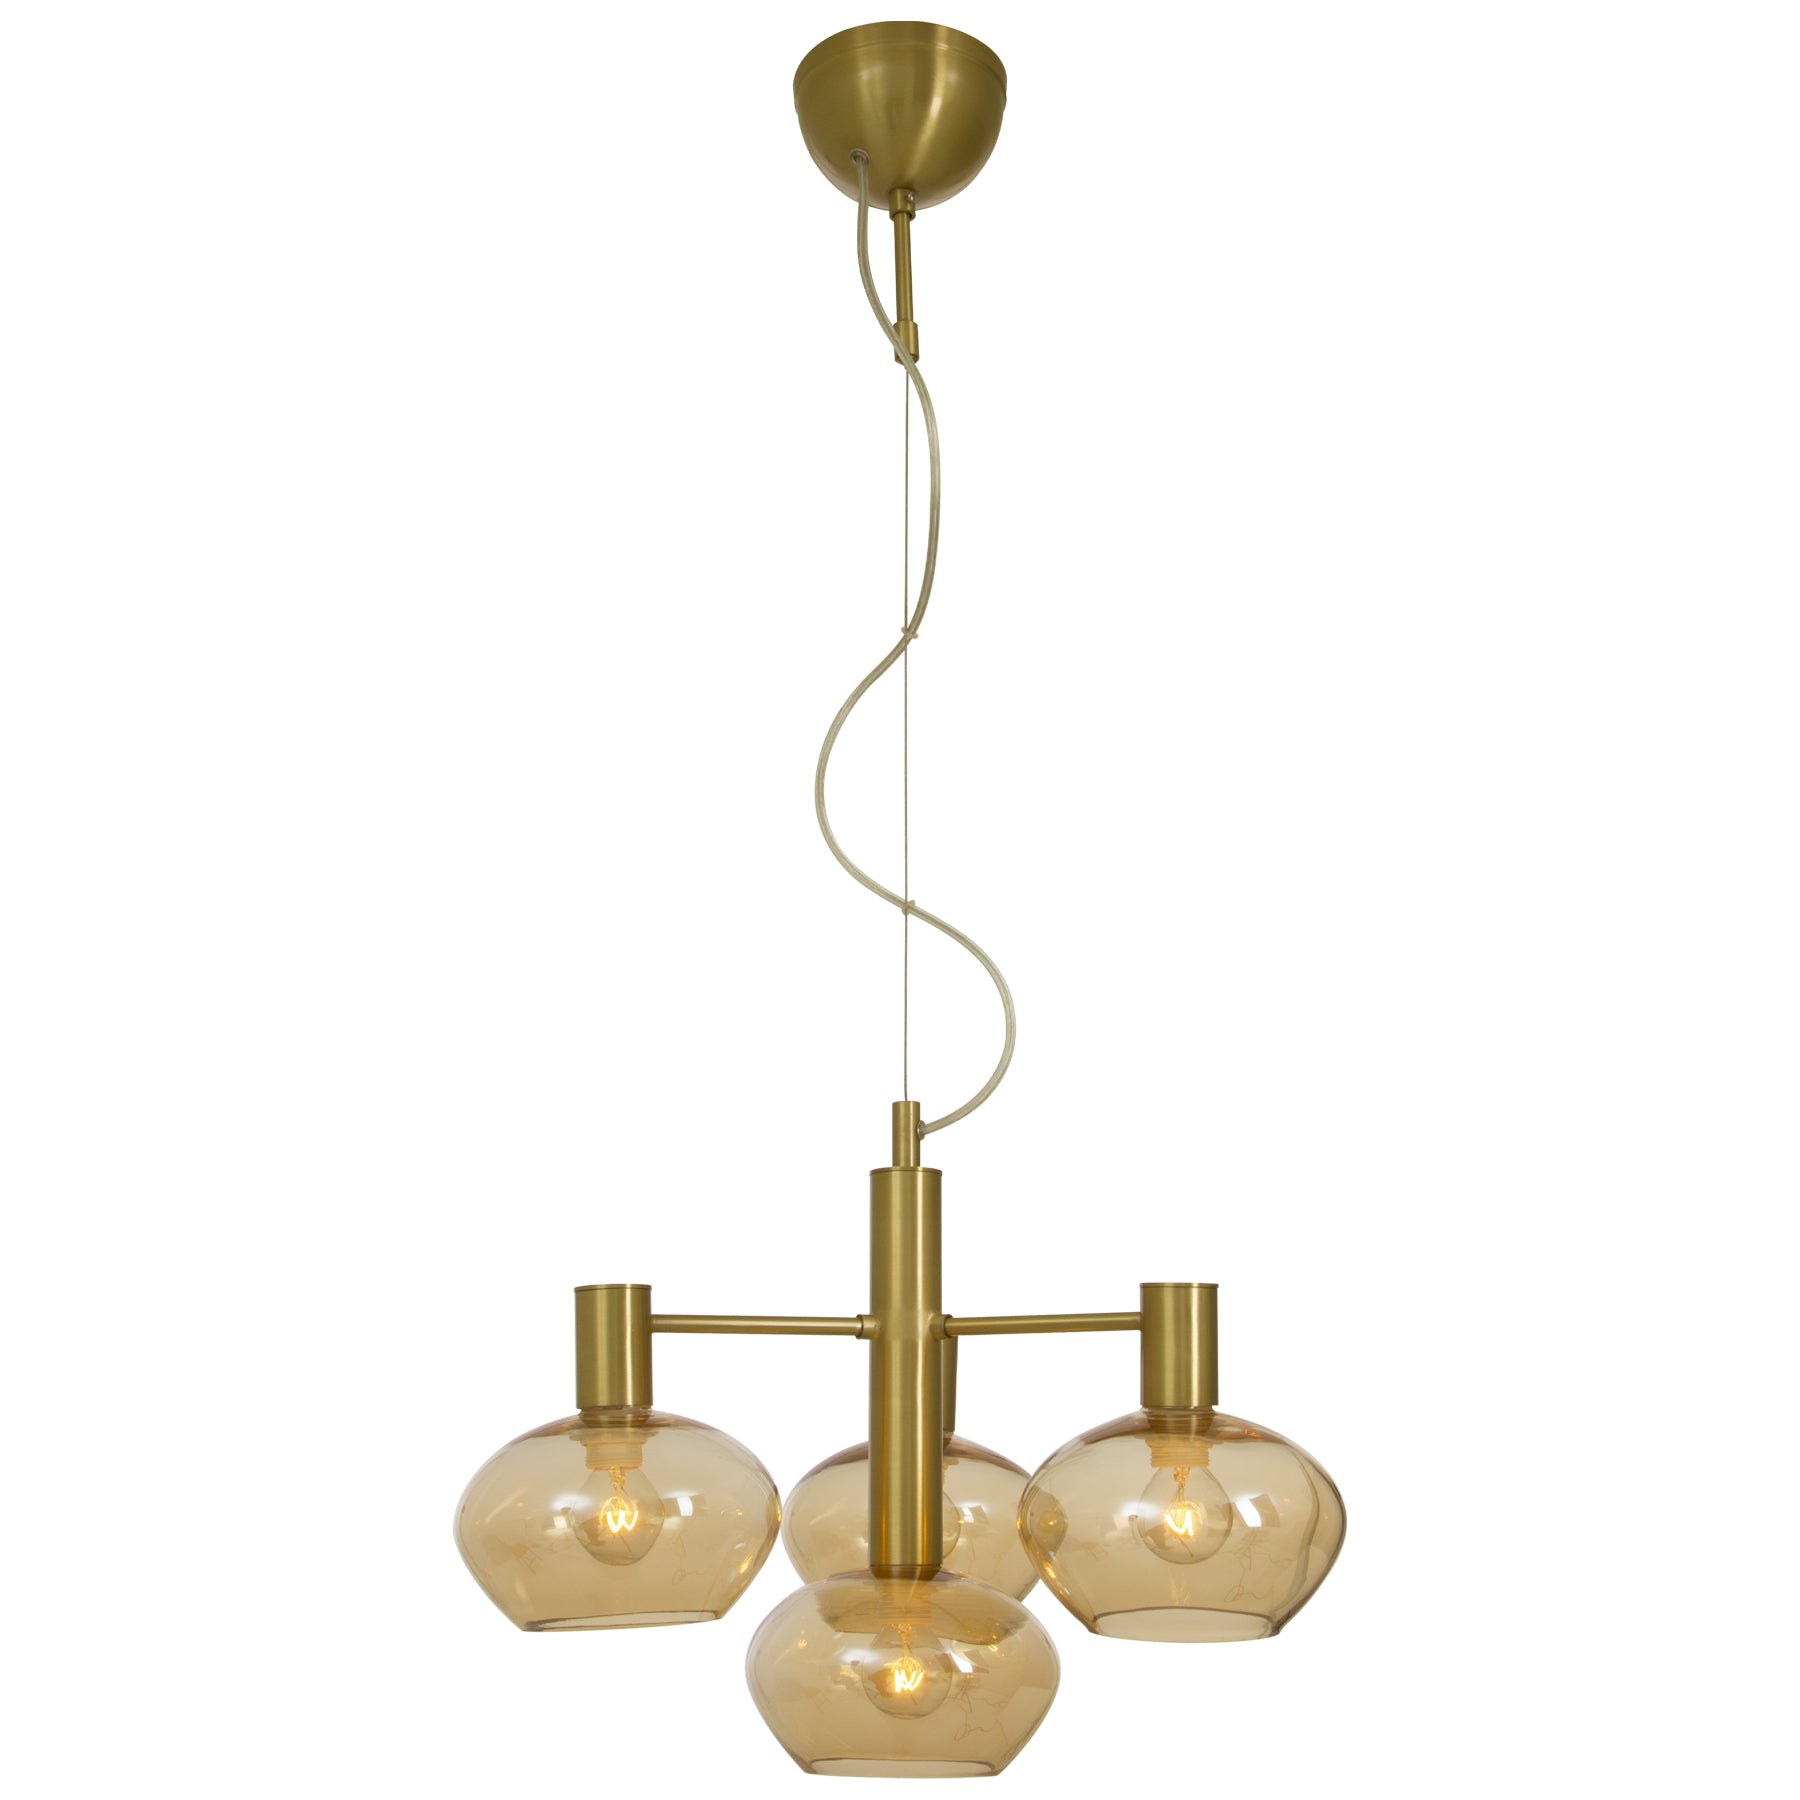 Bell taklampe pendel i messing med fire glasskupler i amber festet rundt midten - Aneta belysning